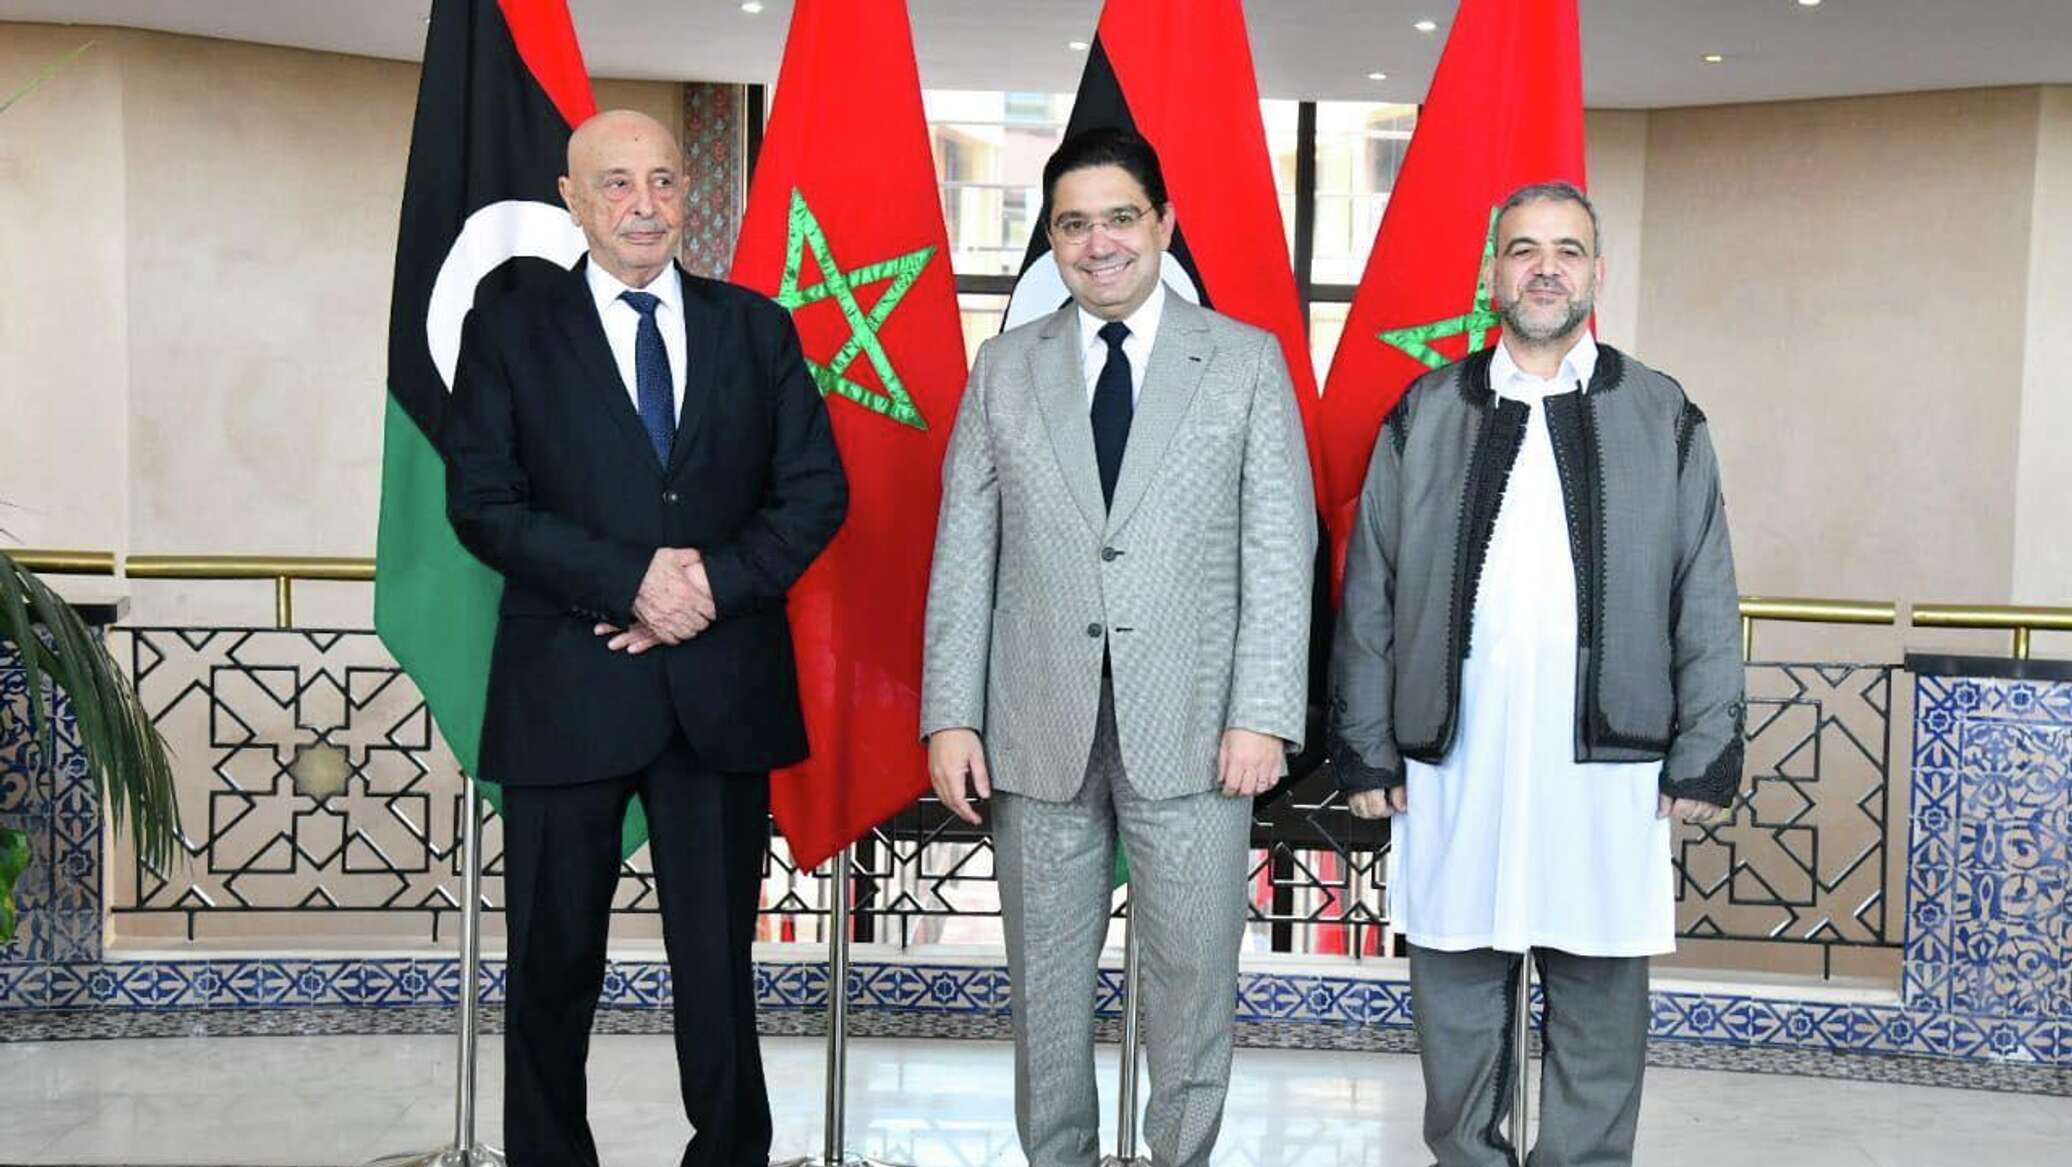 بعد الاتفاق التاريخي.. الأردن يشيد بدور المغرب في إنجاح الحوار بين الفرقاء الليبيين